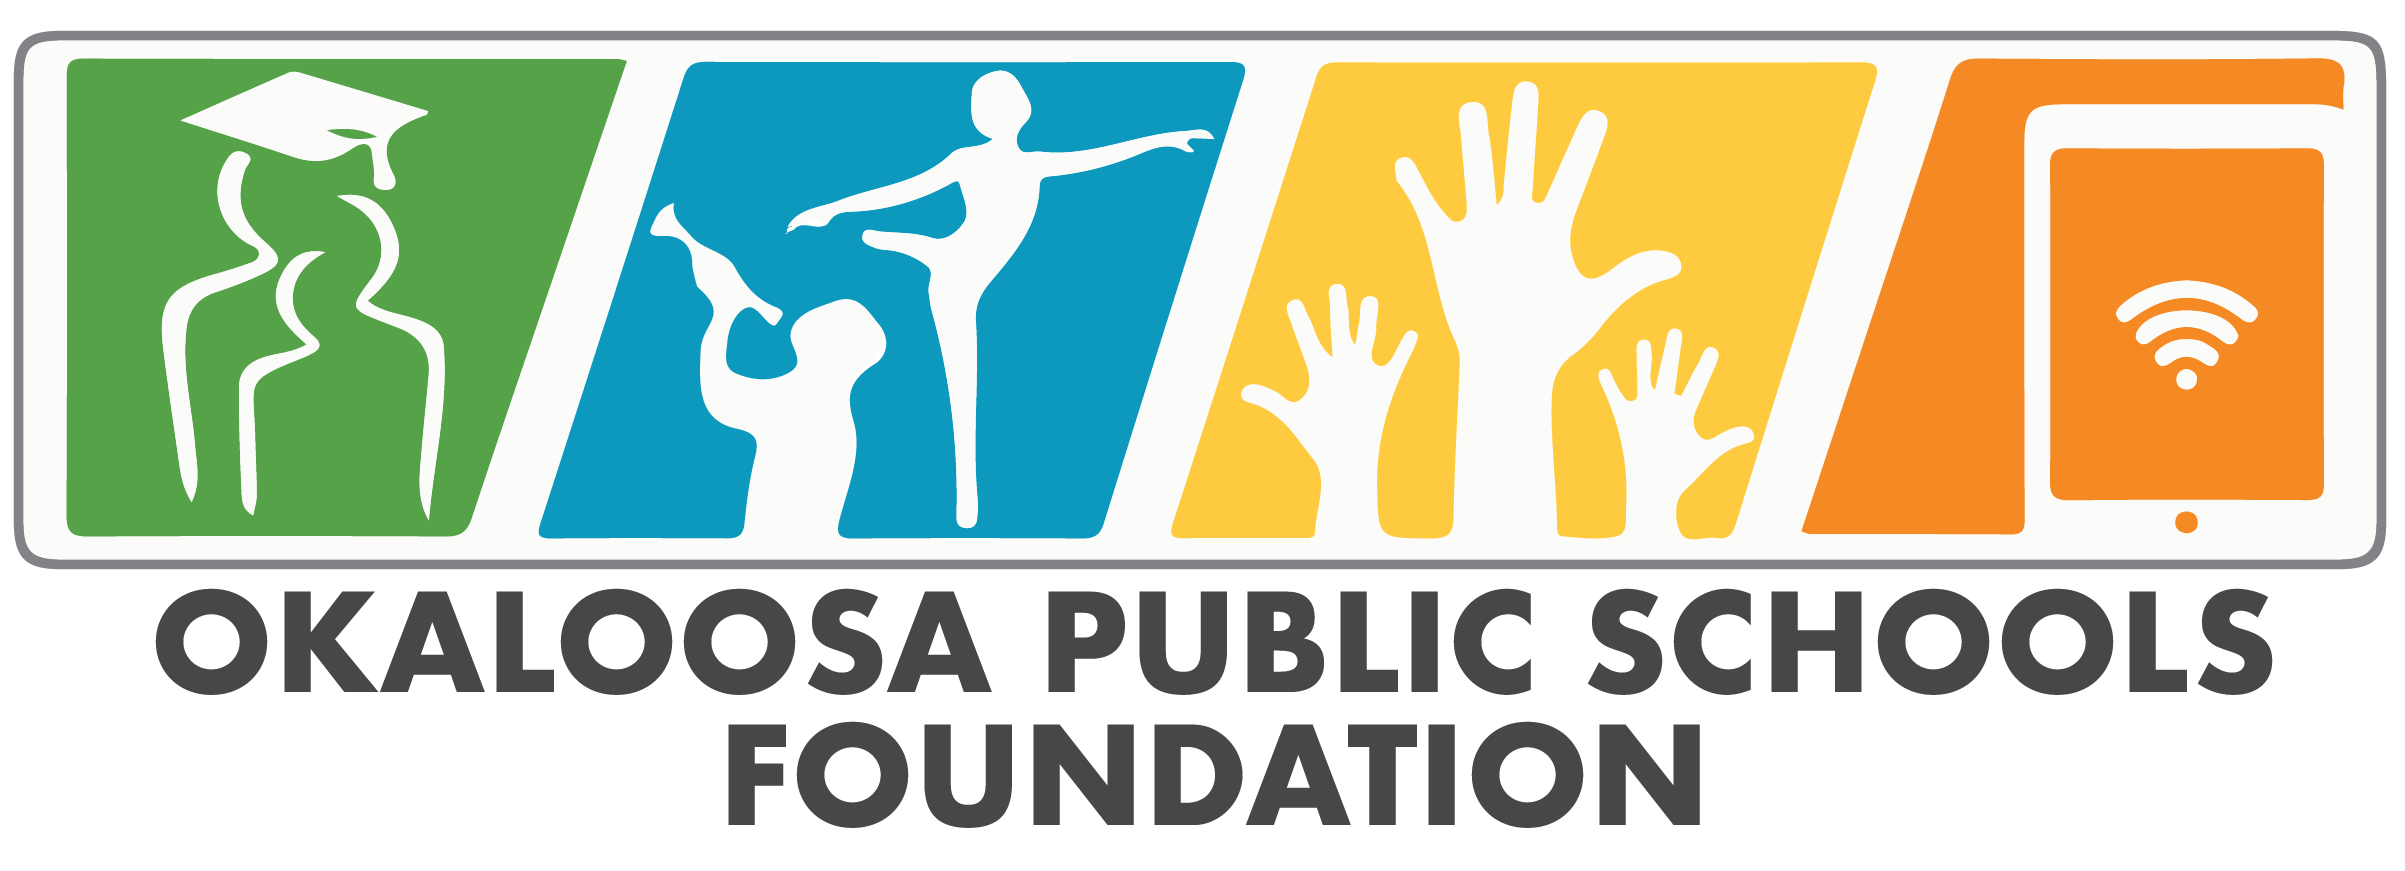 Okaloosa Public Schools Foundation